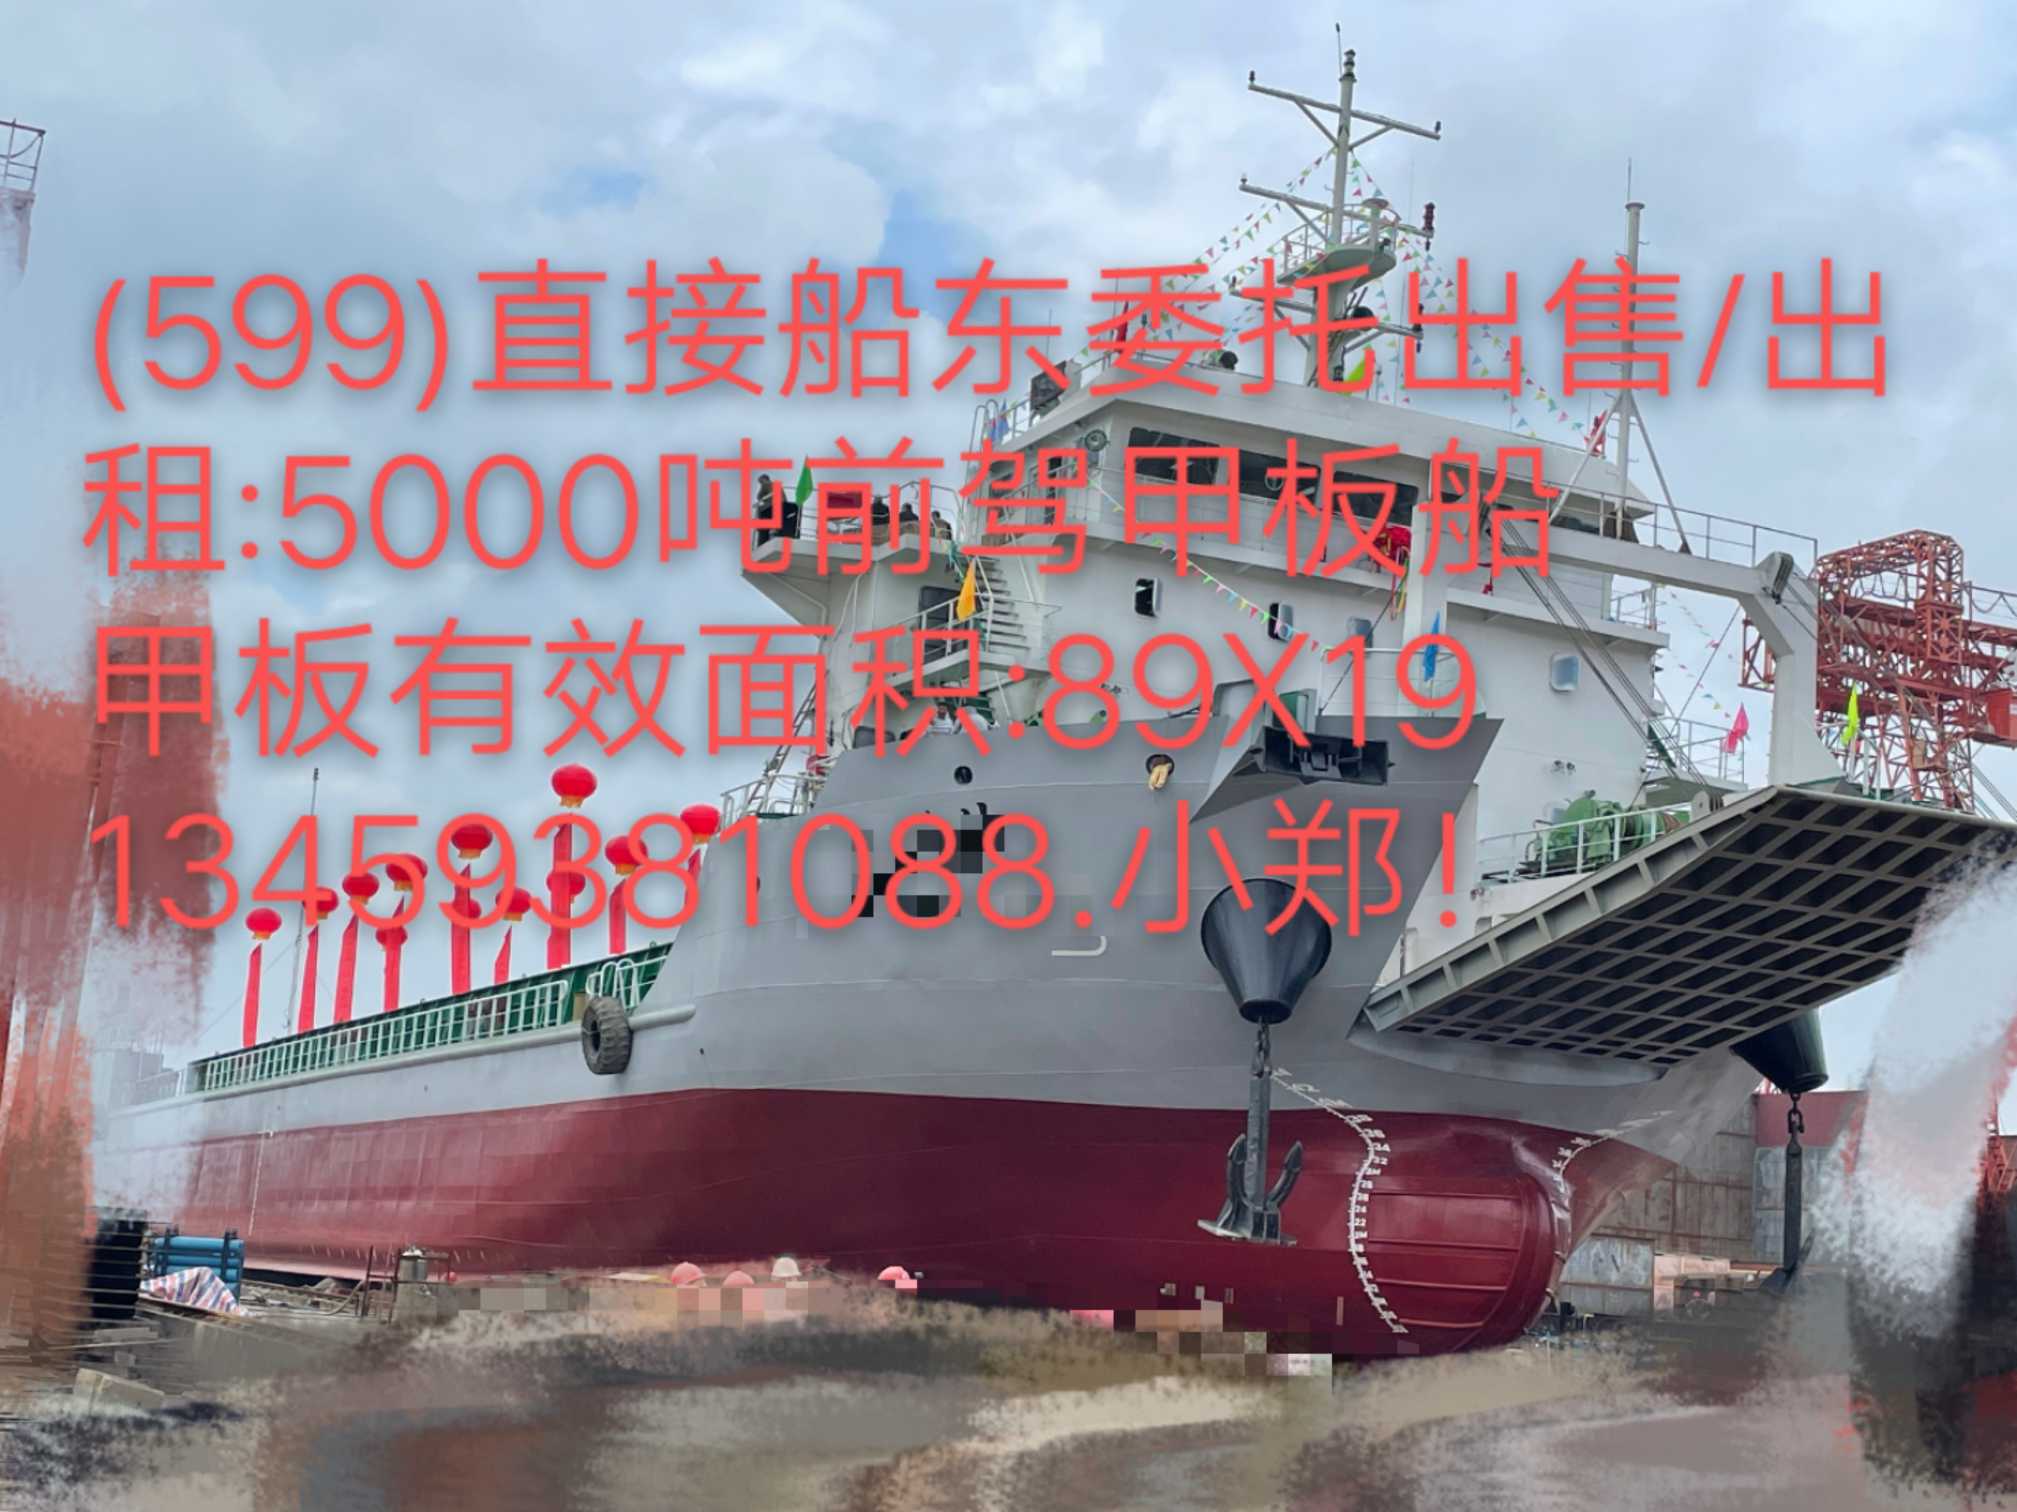 出租/出售:2021年造5000吨前驾甲板船